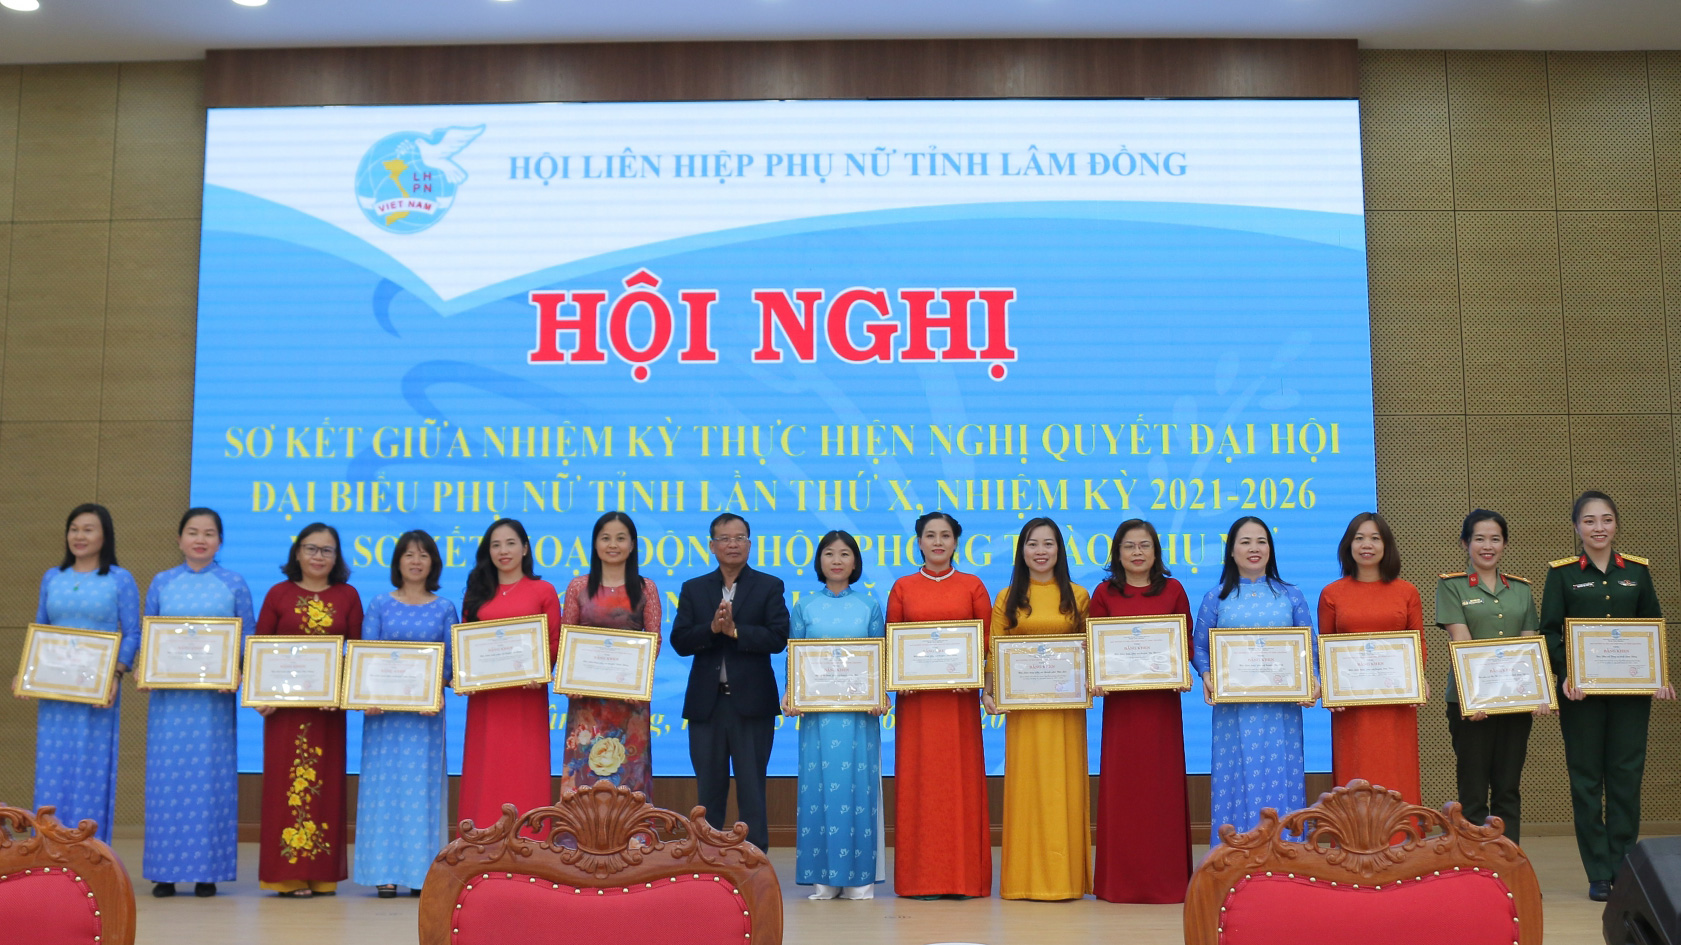 Chủ tịch Hội LHPN tỉnh Lâm Đồng Phạm Thị Ánh Tuyết trao Bằng khen cho Hội LHPN cấp cơ sở